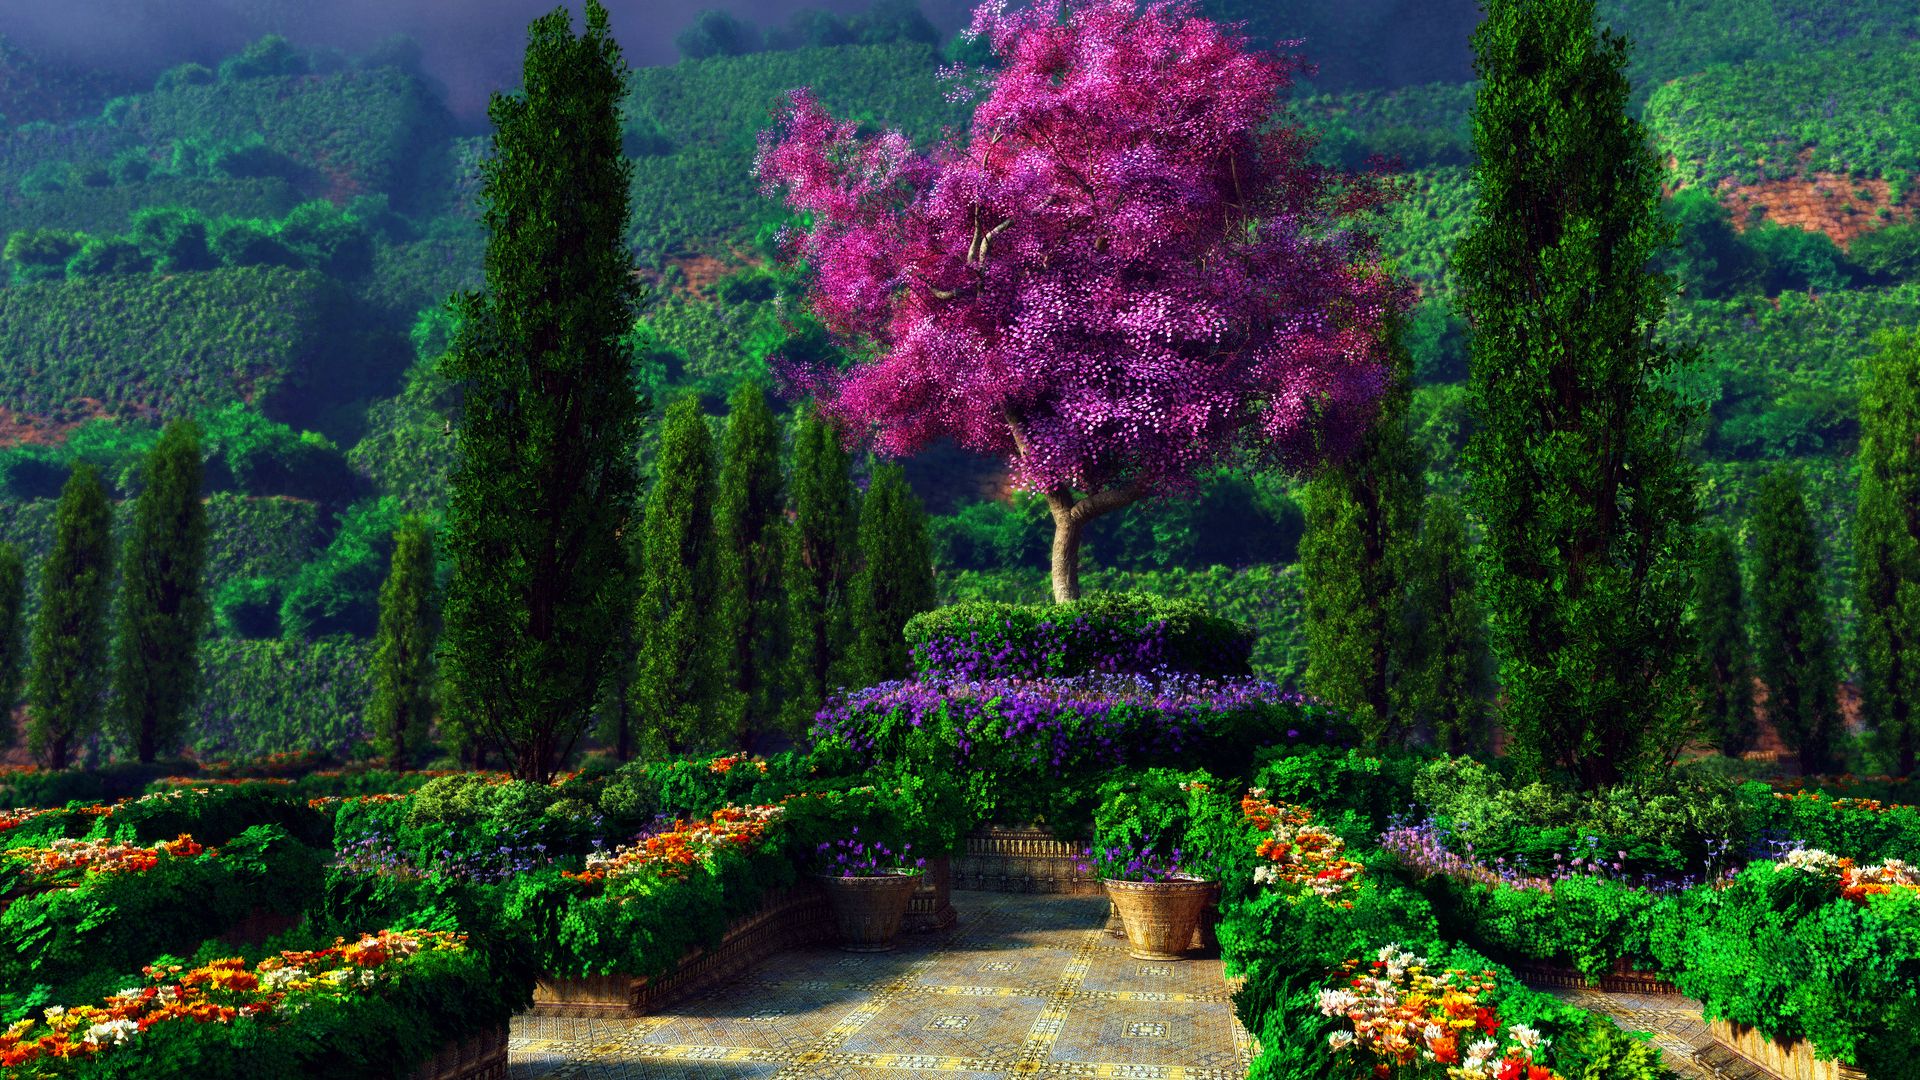 beautiful garden wallpaper,nature,natural landscape,tree,garden,vegetation